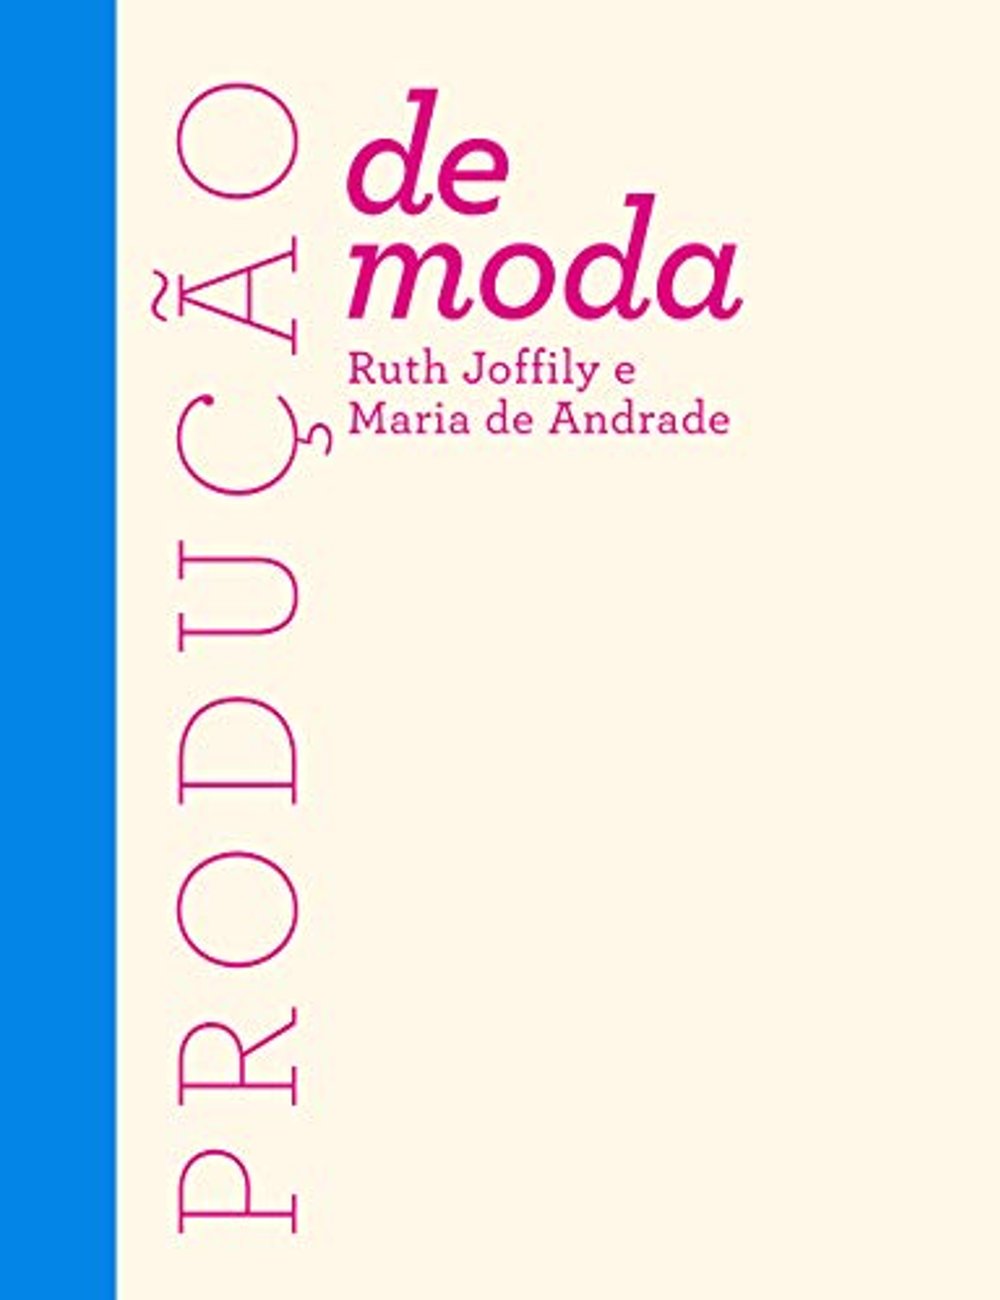 Produção de Moda - Ruth Joffily e Maria de Andrade - livros de moda - livros de moda - livros de moda - livros de moda - https://stealthelook.com.br